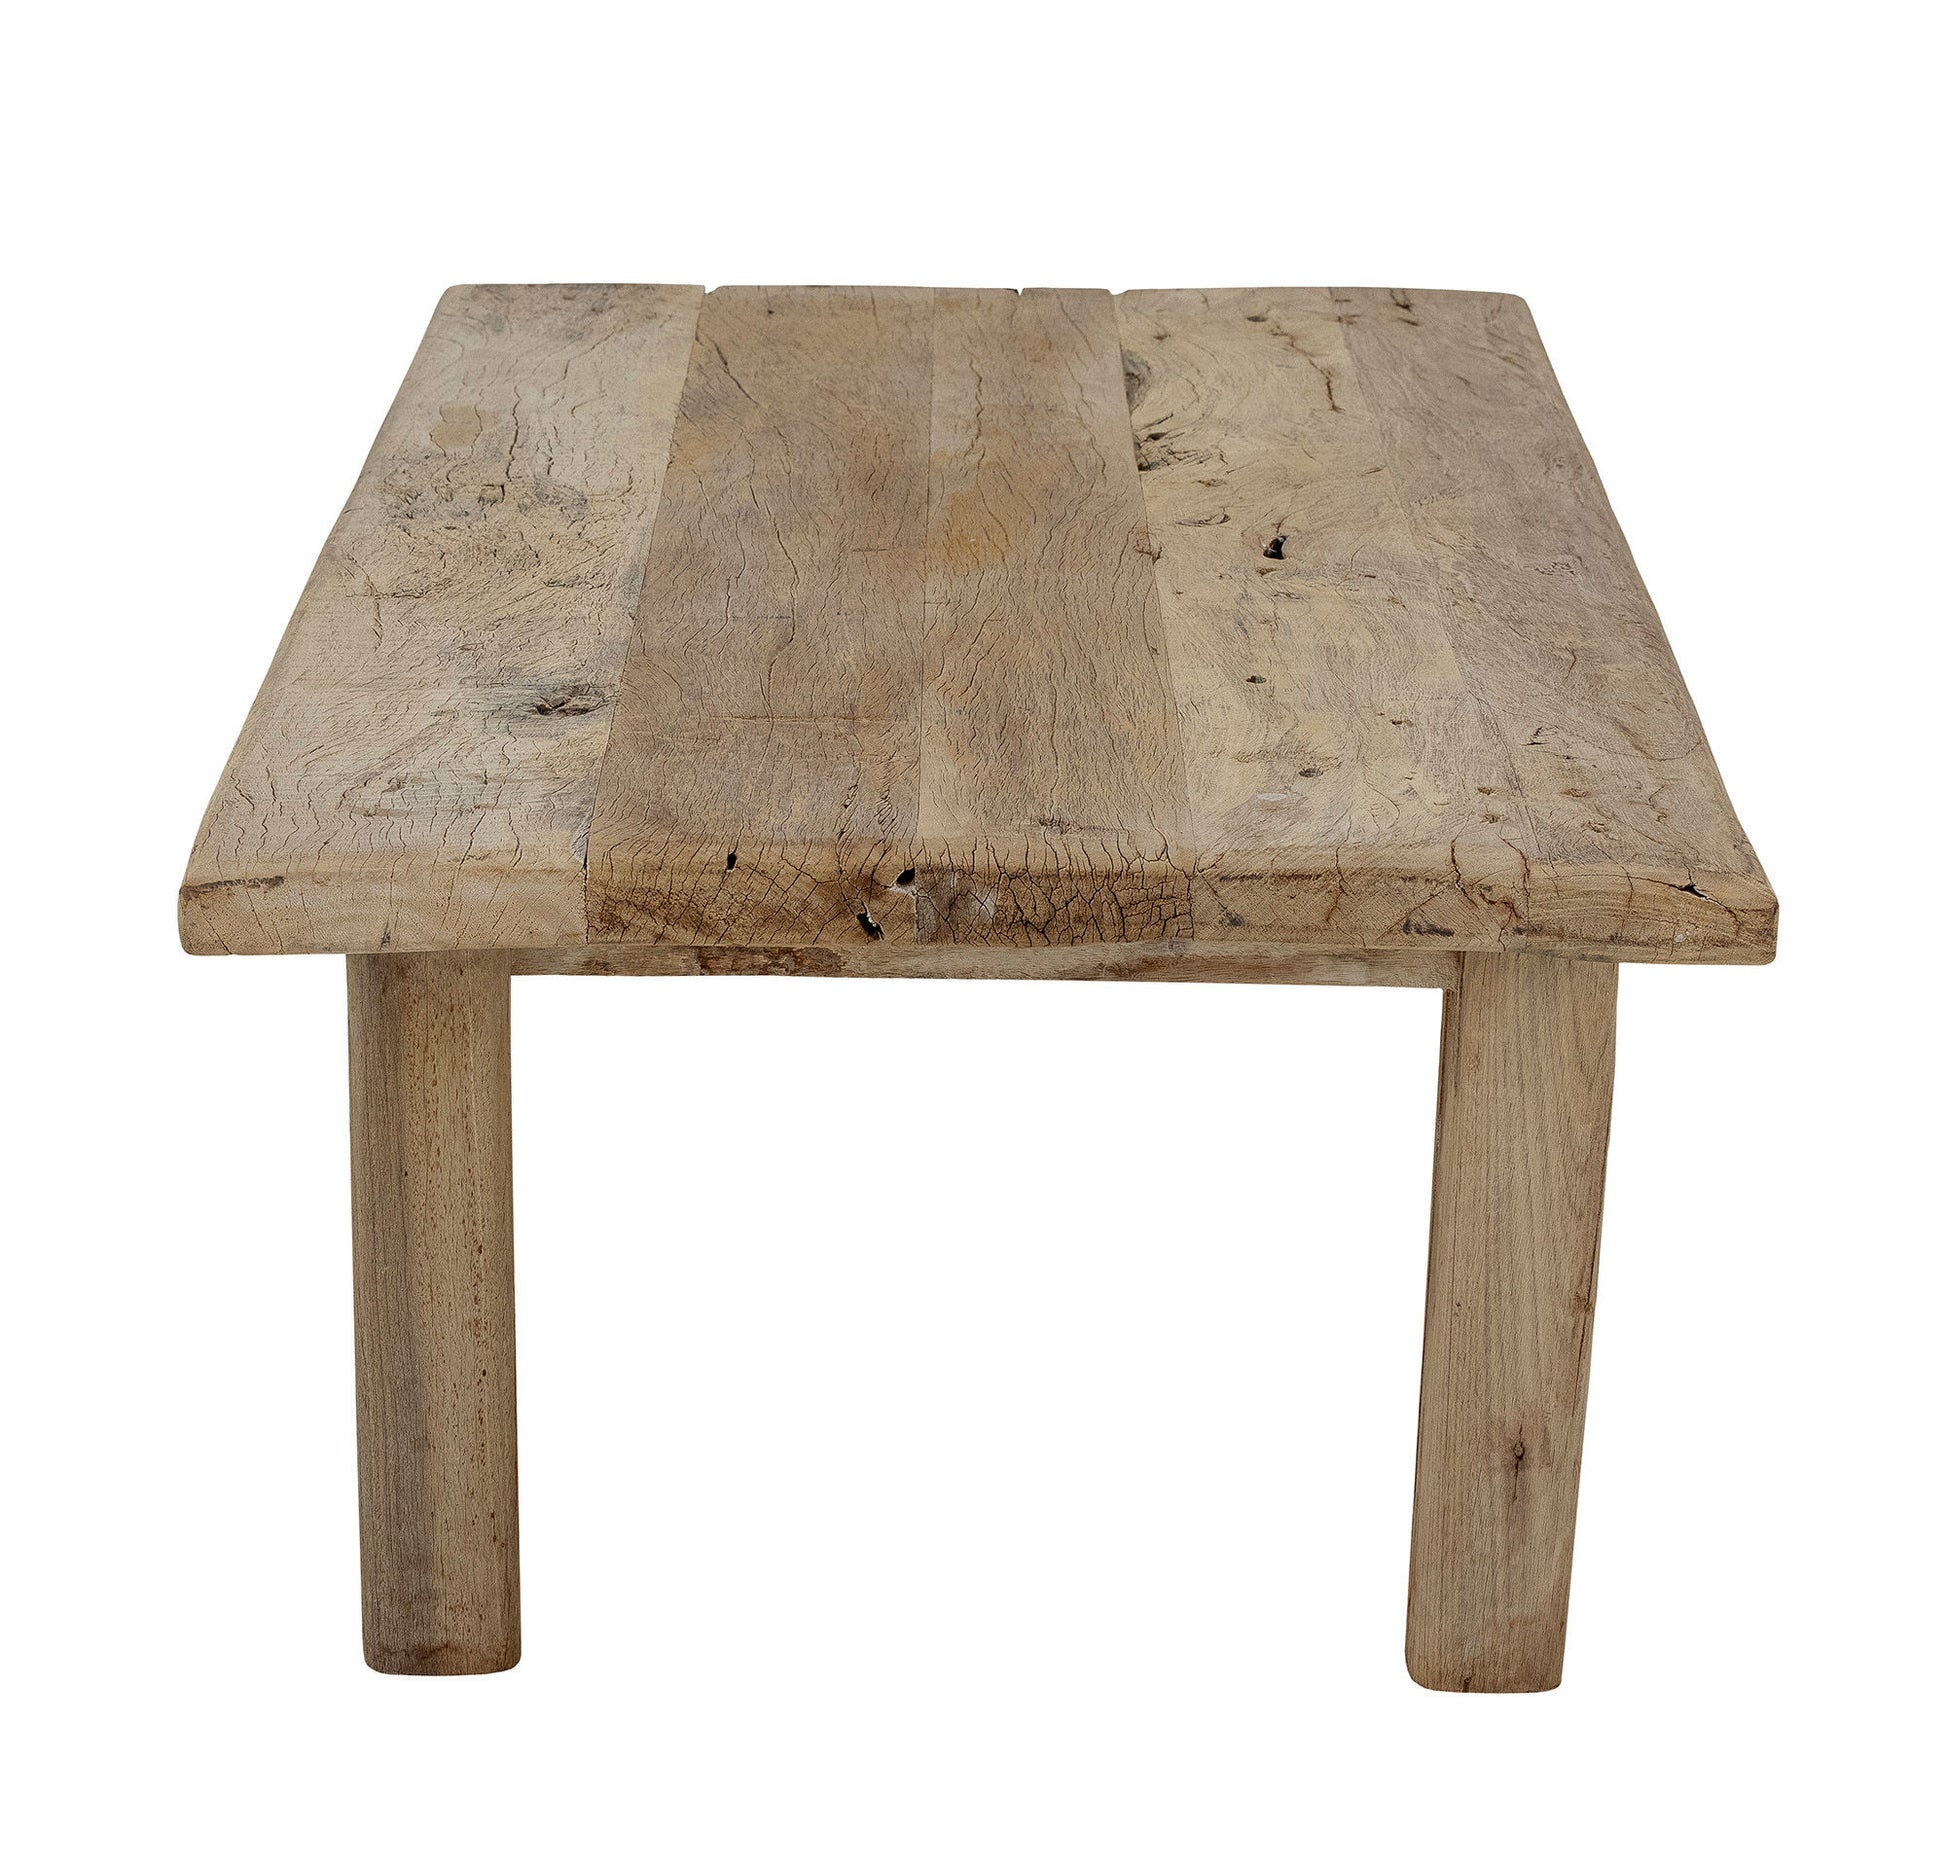 Table basse rustique en bois recyclé - RIB - maison bloom concept